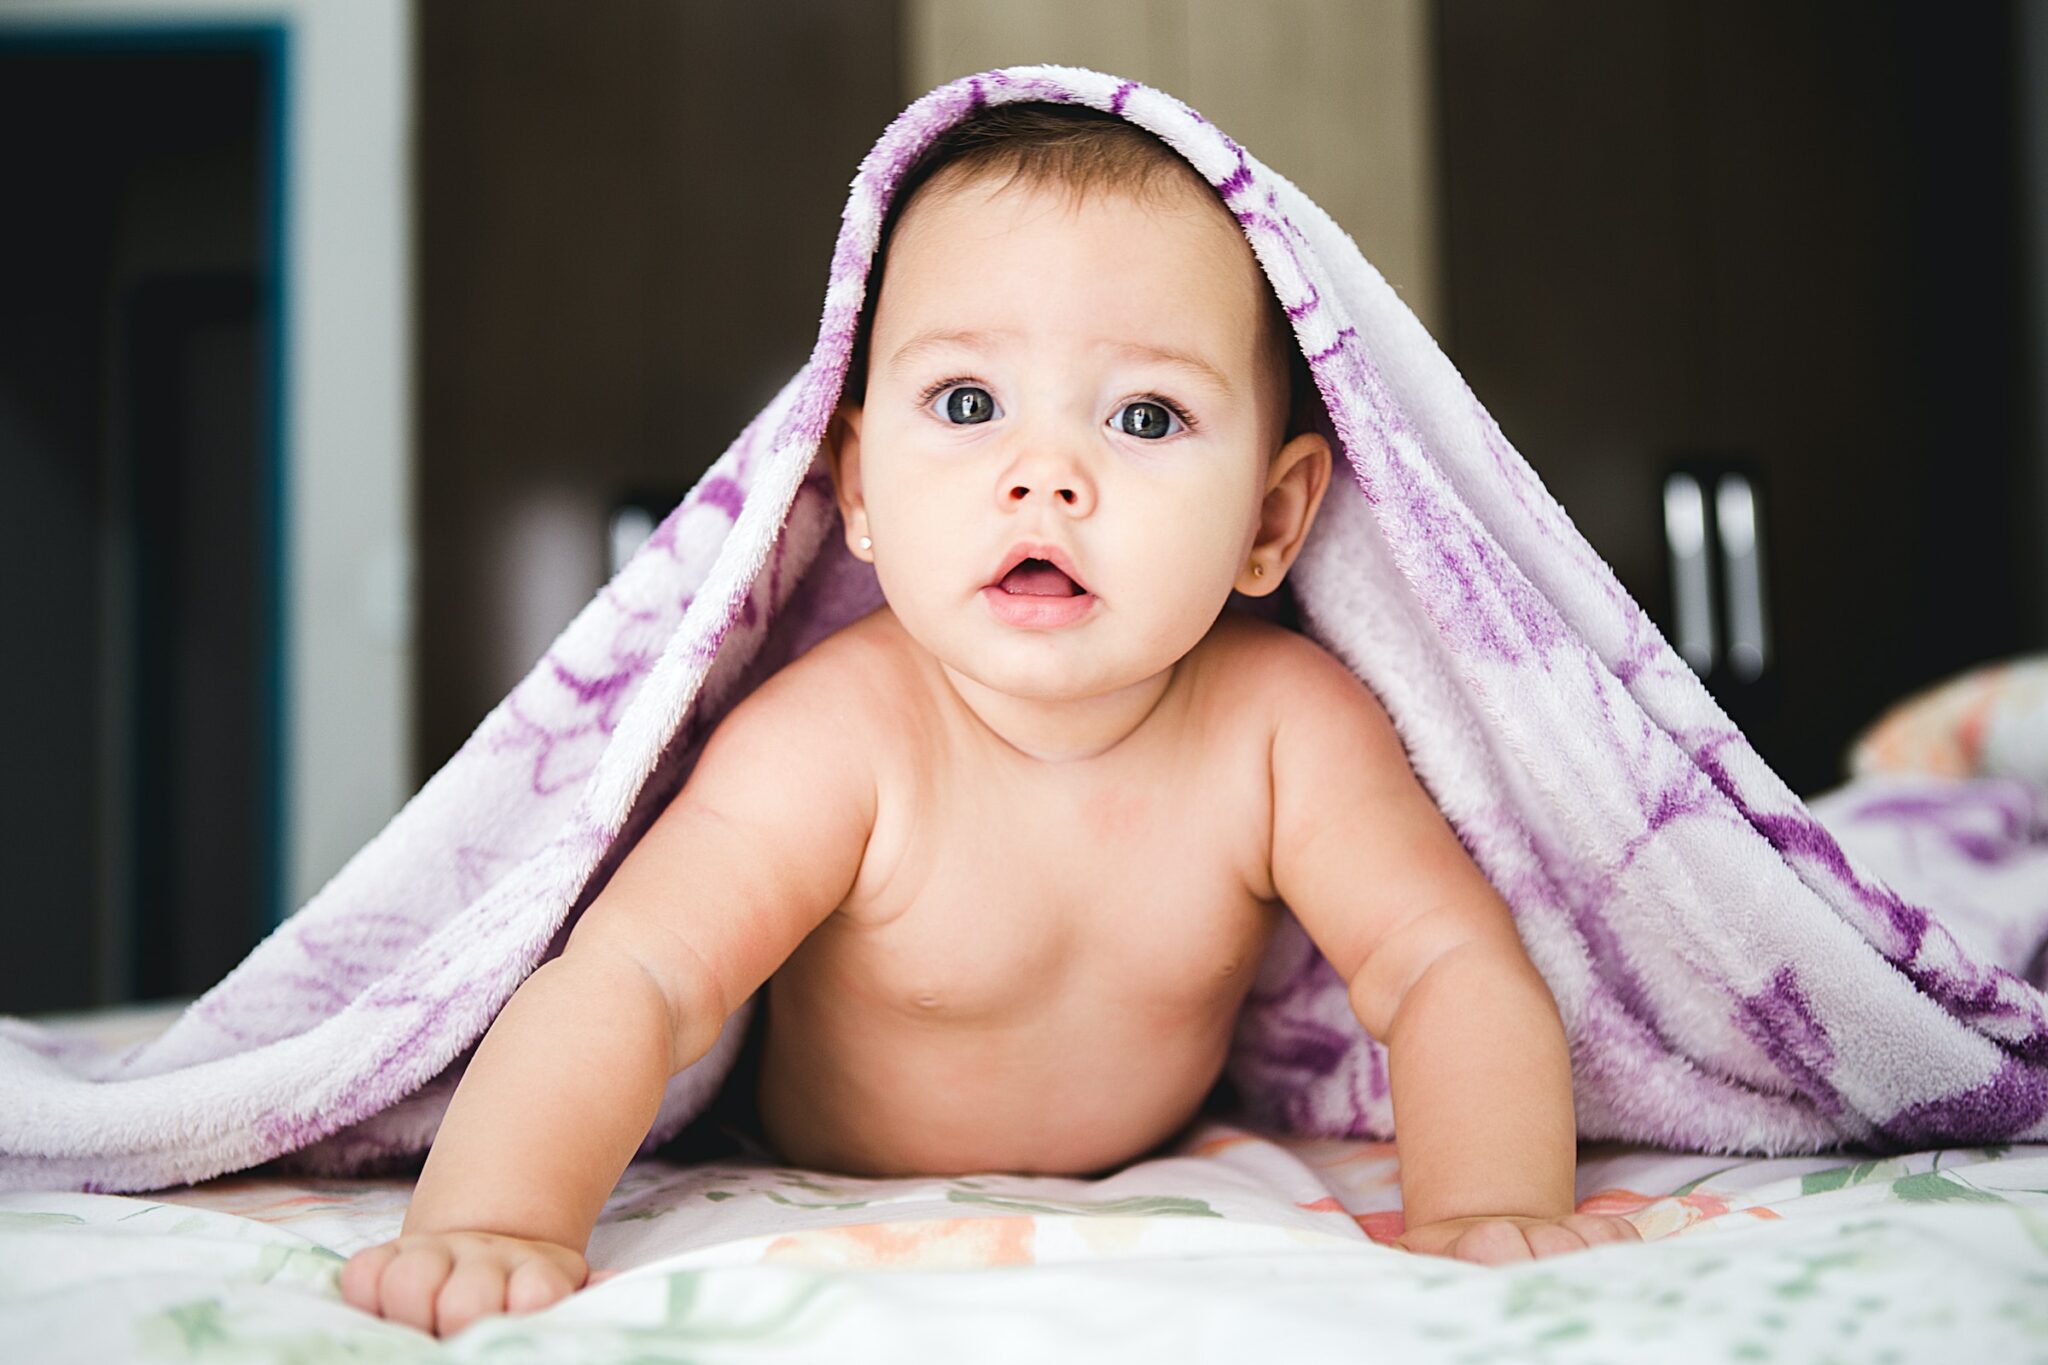 Baby under a purple blanket